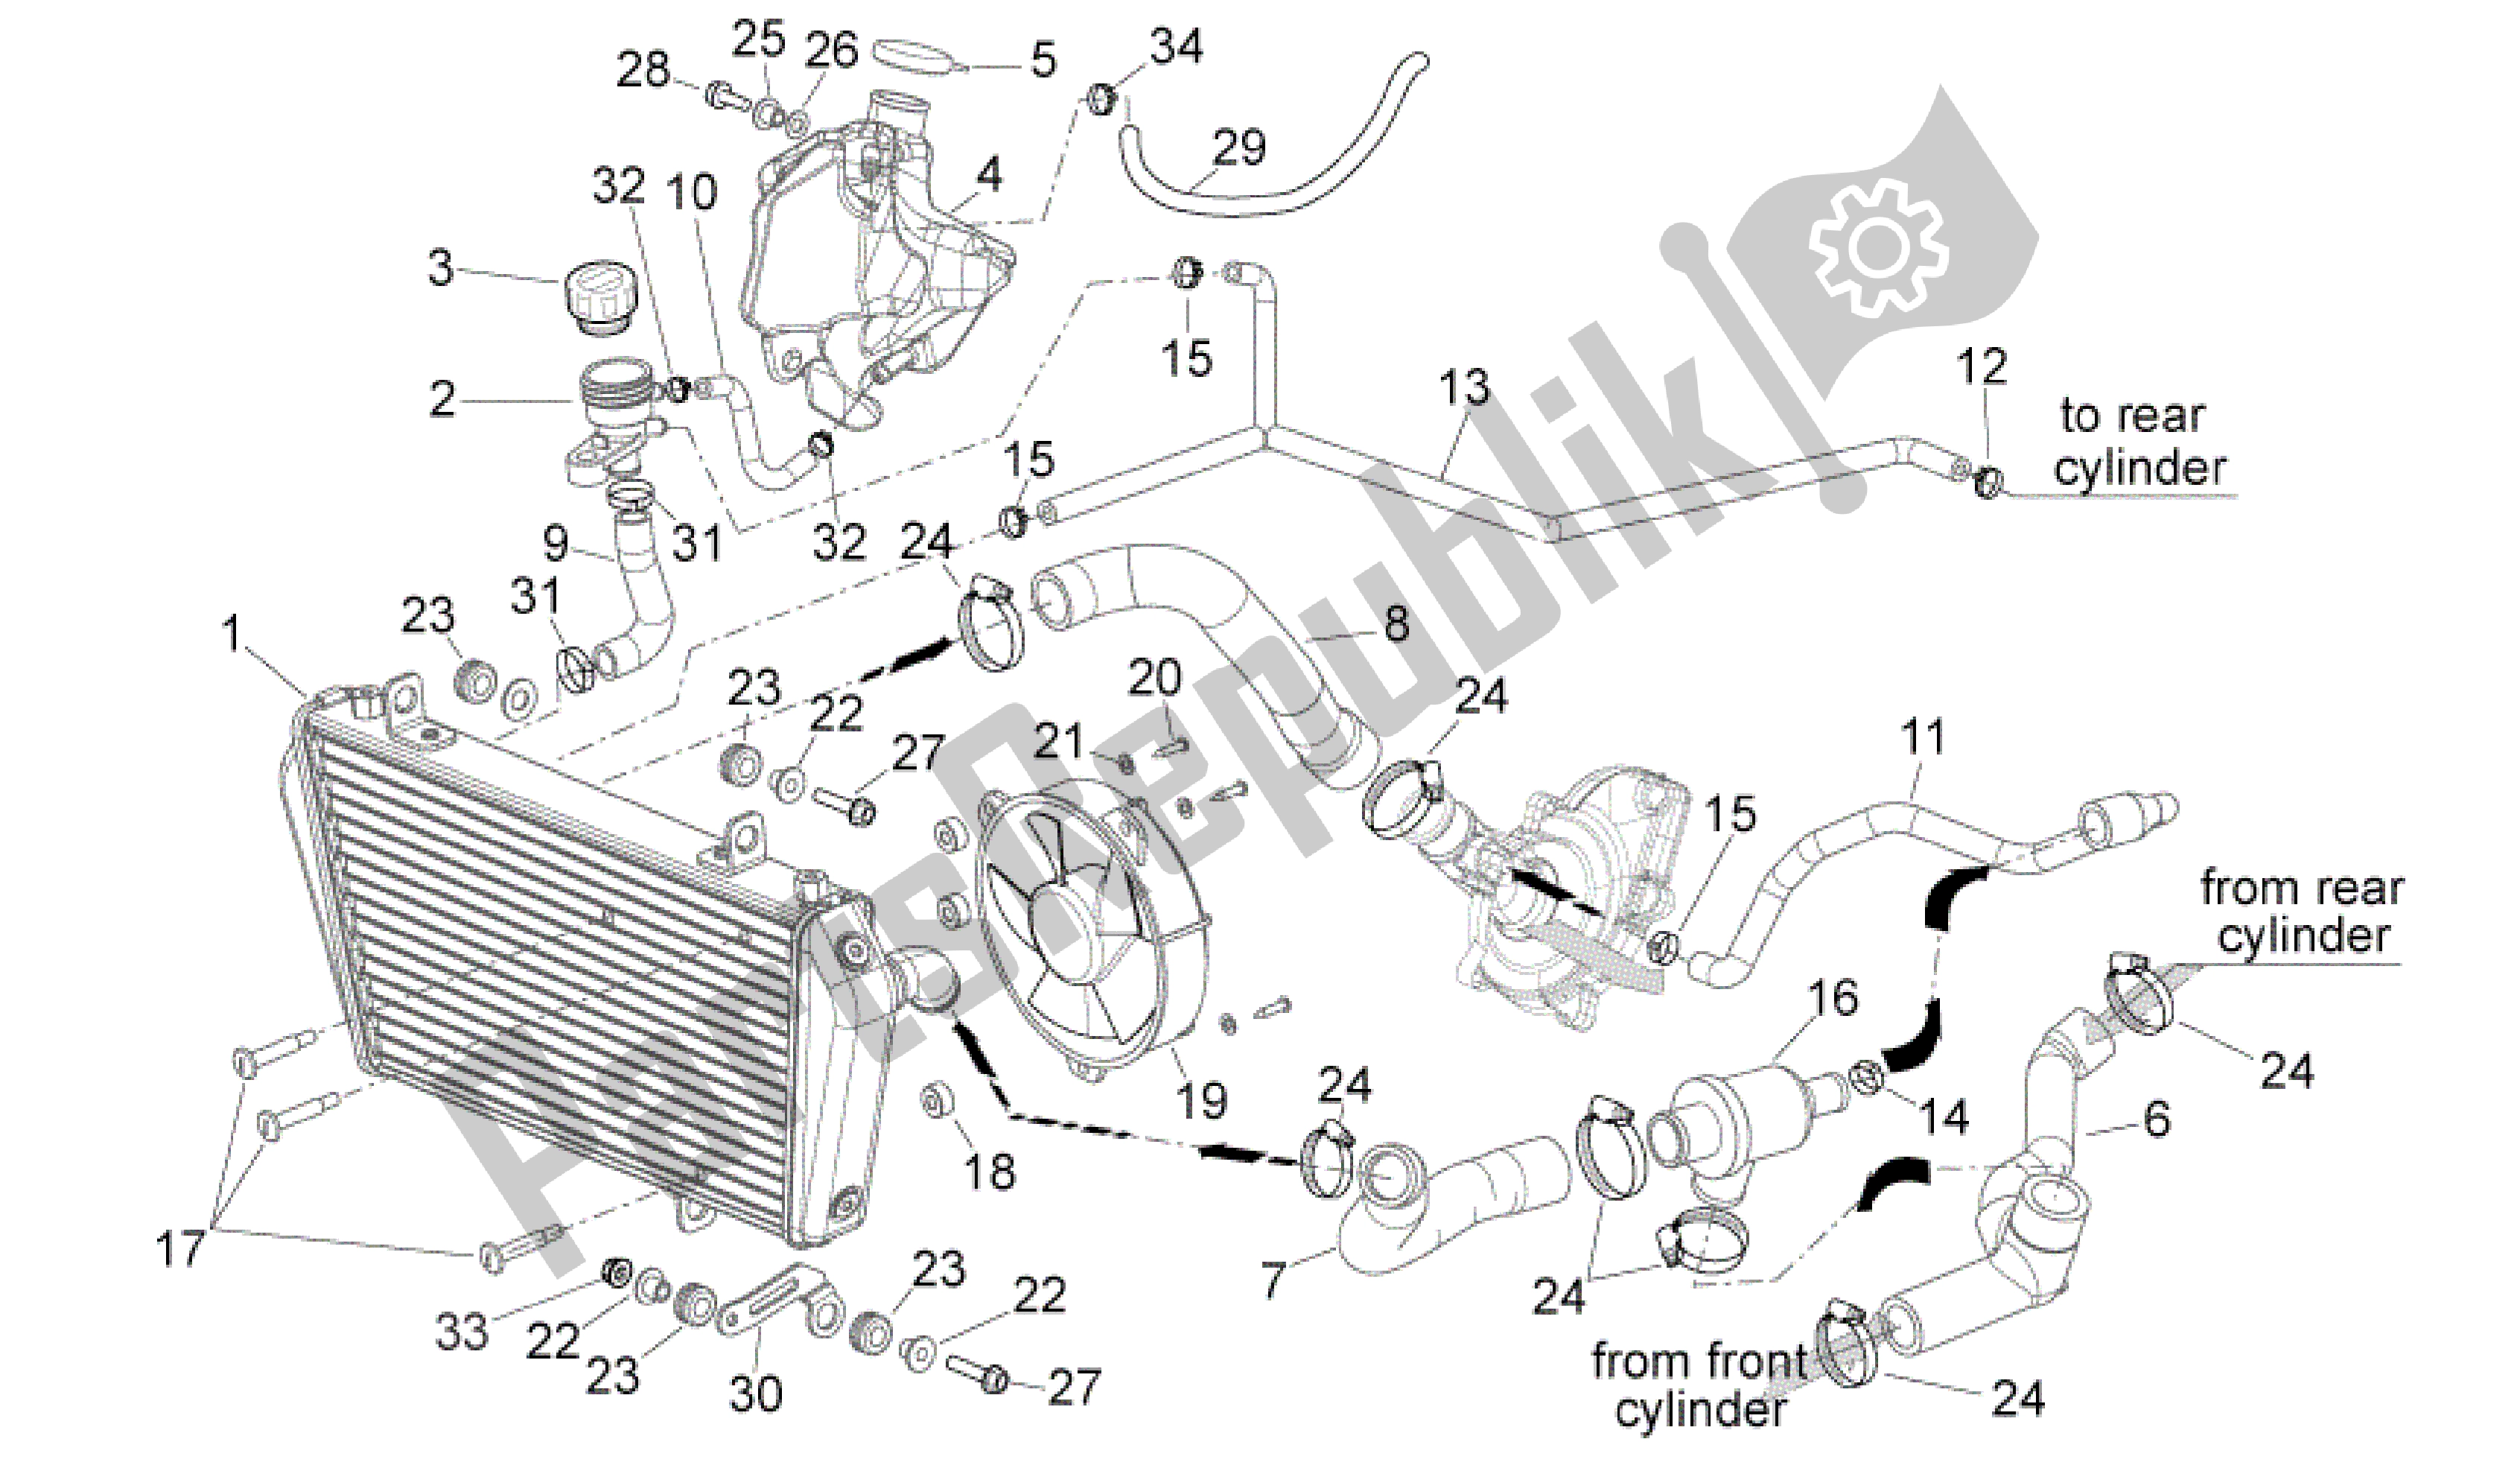 Alle onderdelen voor de Koelsysteem van de Aprilia Shiver 750 2010 - 2013